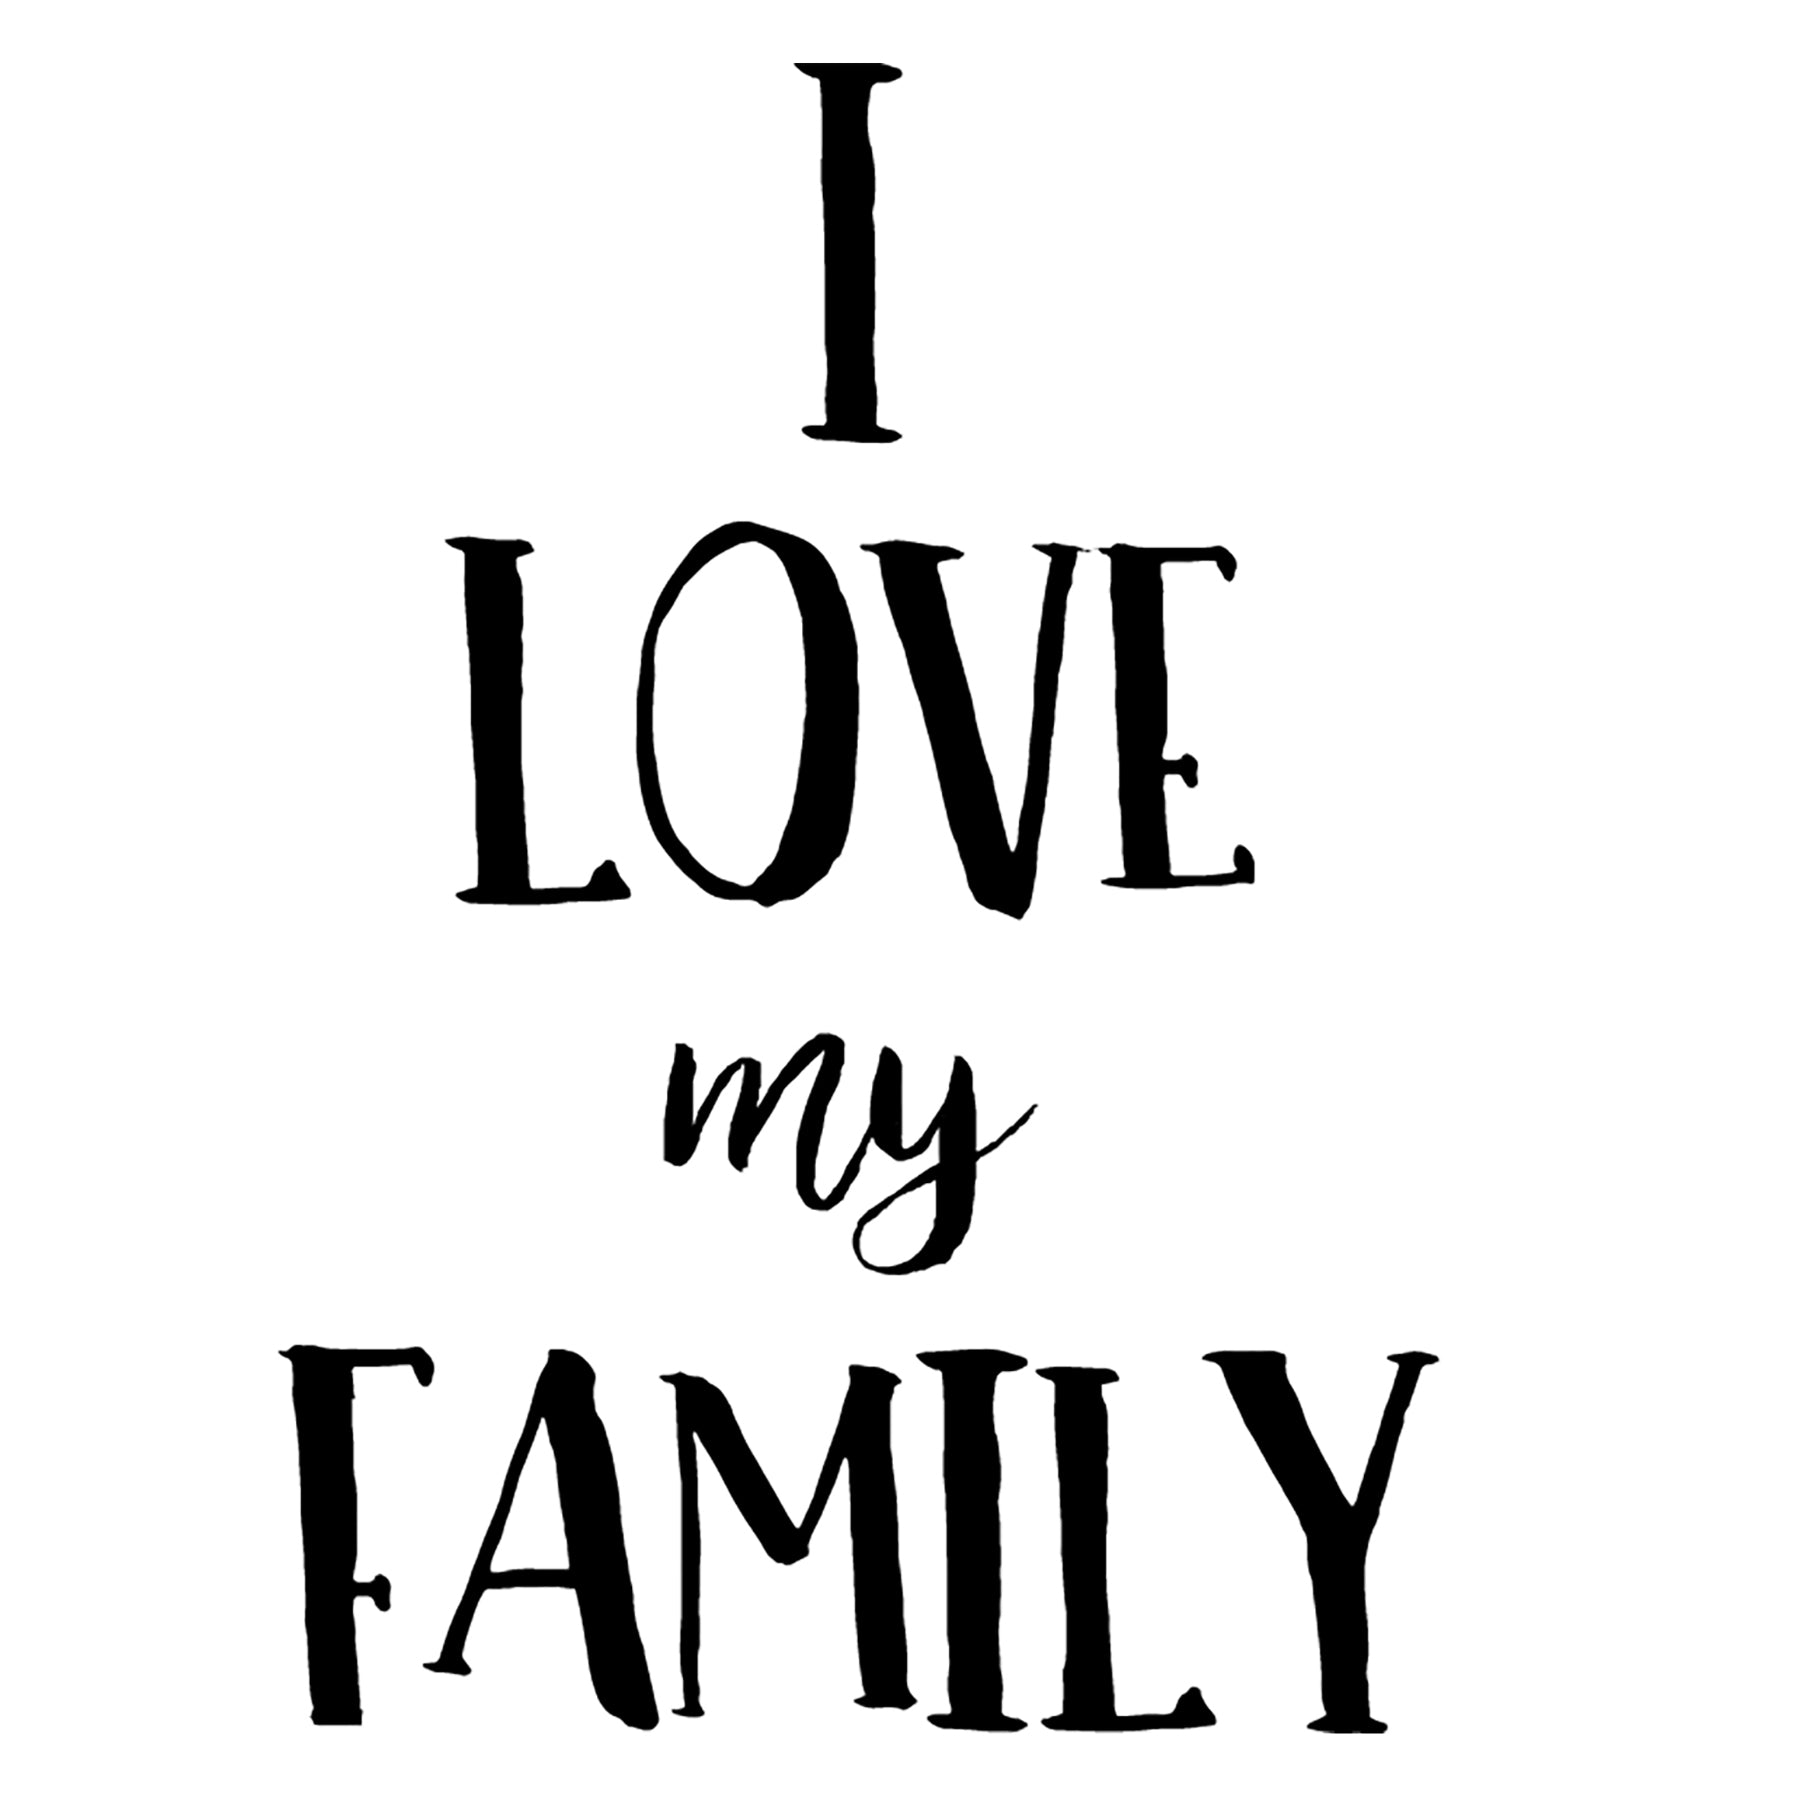 I Love My Family, 5.2 x 3.6 Vinyl Sticker